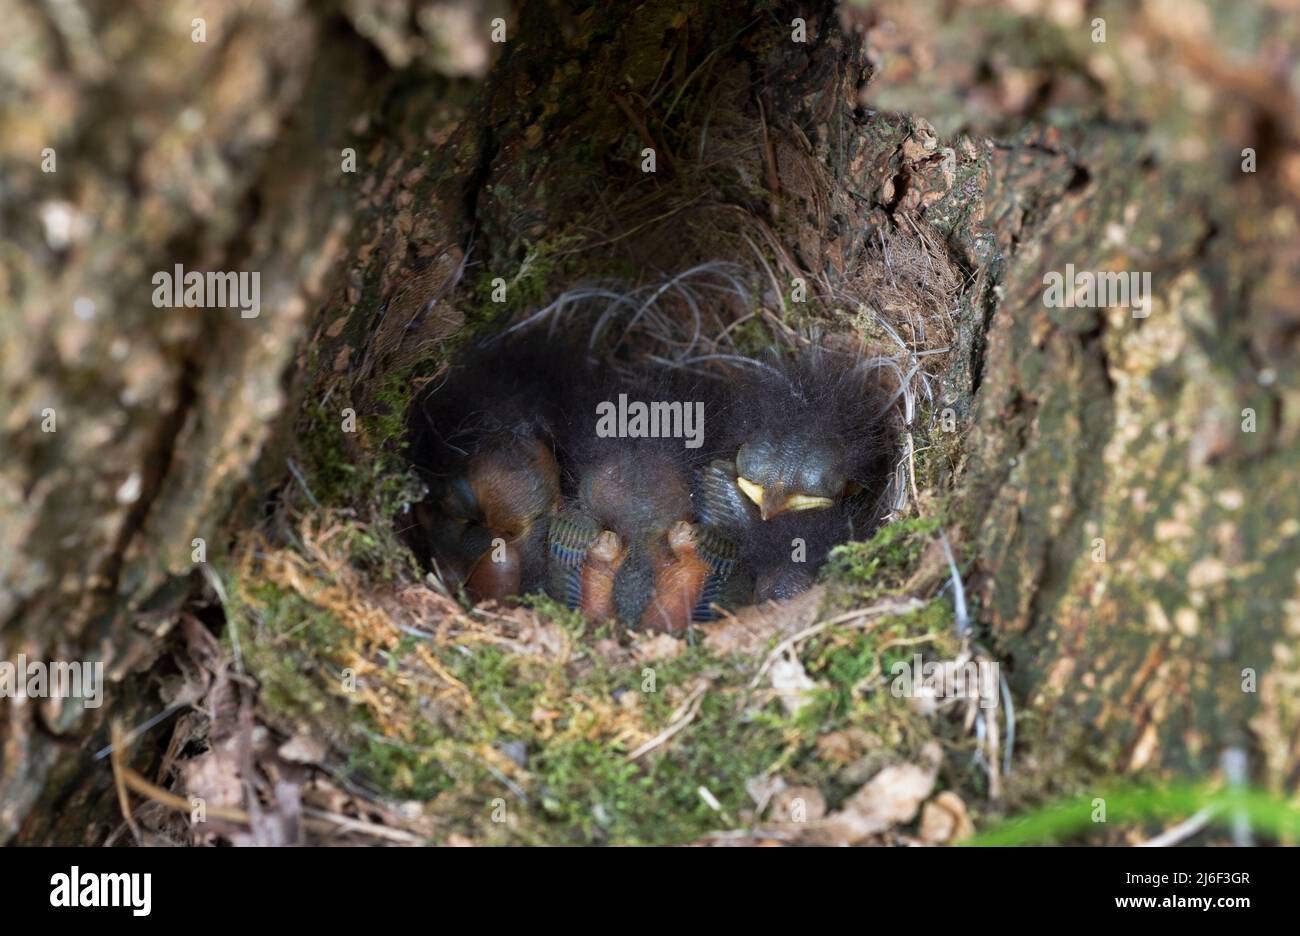 Europäisches Robin, Erithacus rubecula, Altricial Chicks in Ground Nest, London, Vereinigtes Königreich Stockfoto